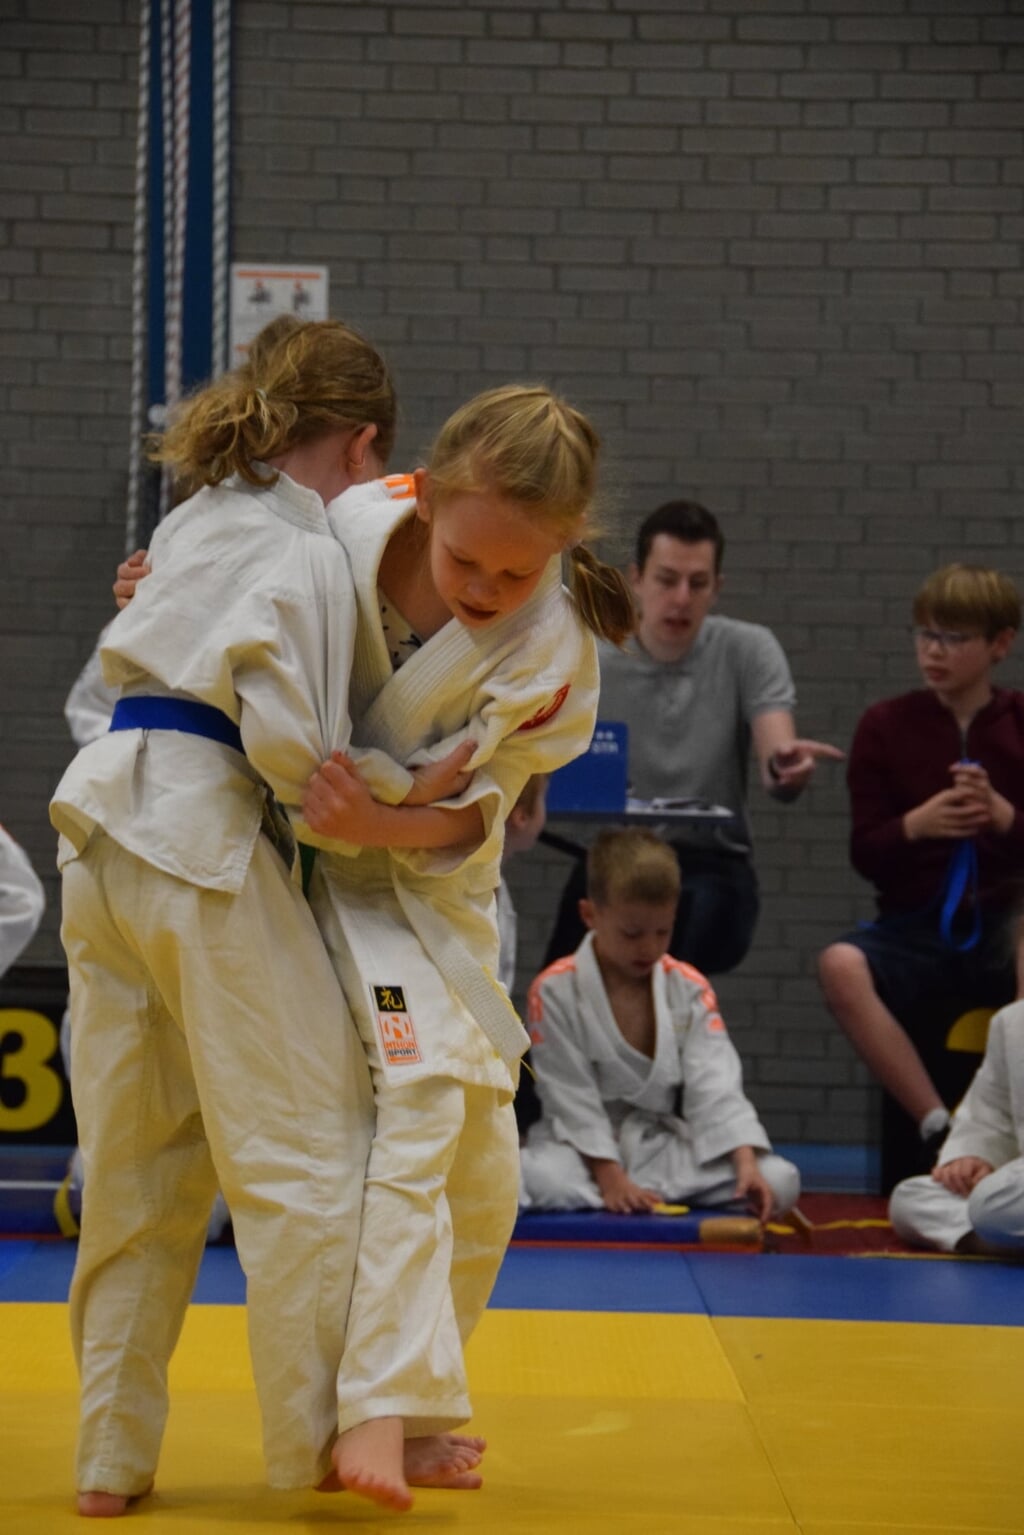 Felle judowedstrijden door onze meisjes